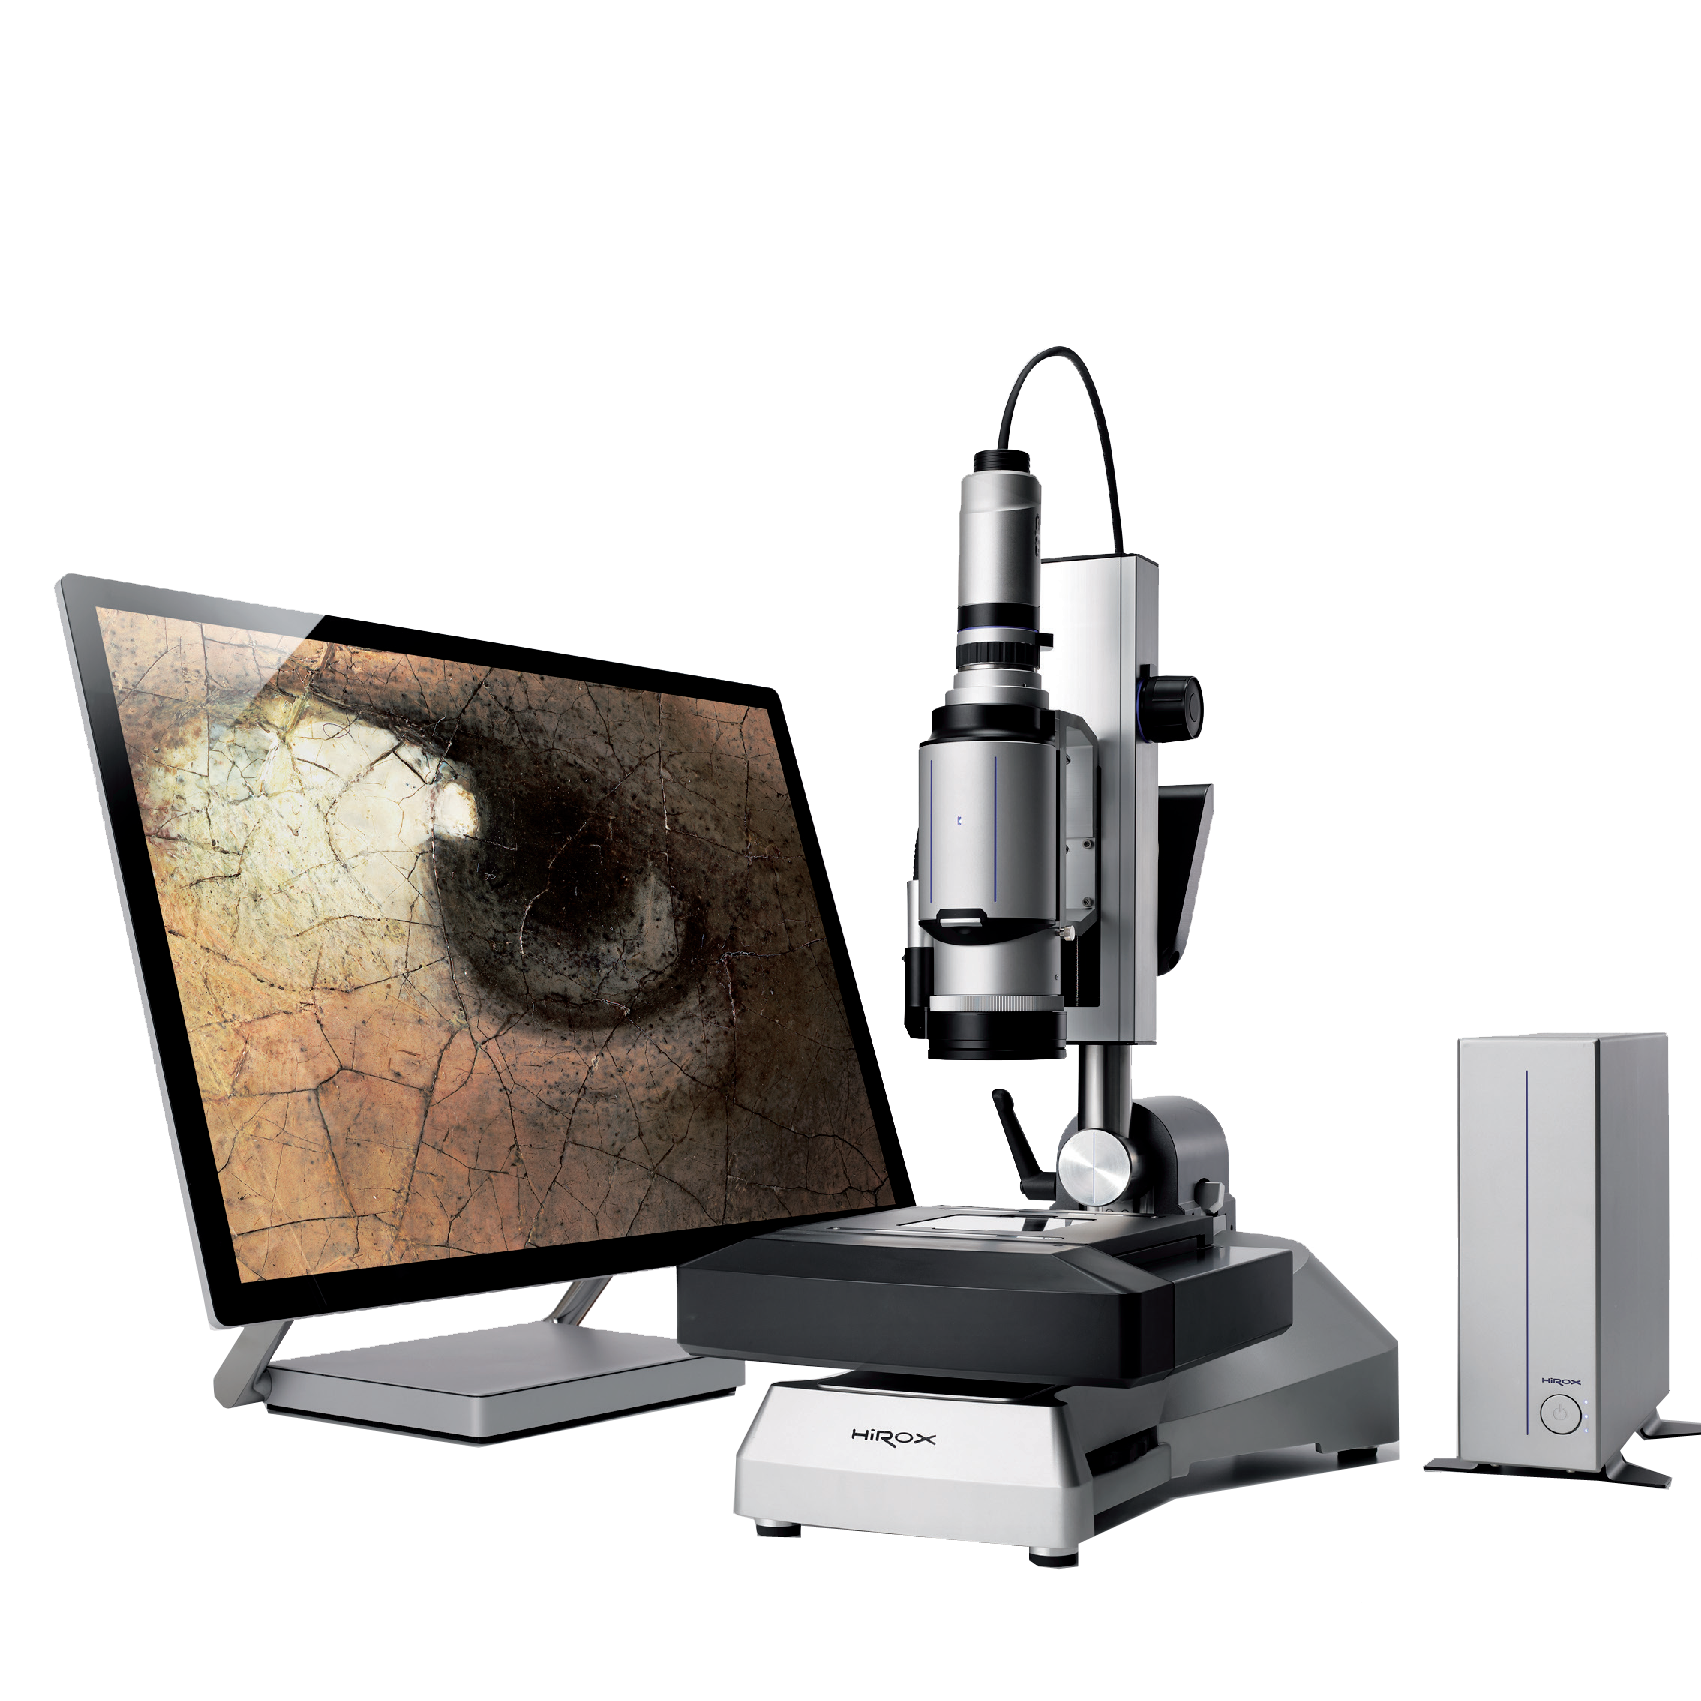 日本进口显微镜 日本浩视显微镜价格 福建代理浩视显微镜价格 HIROX显微镜 HRX-01日本浩视三维数字视频显微镜 